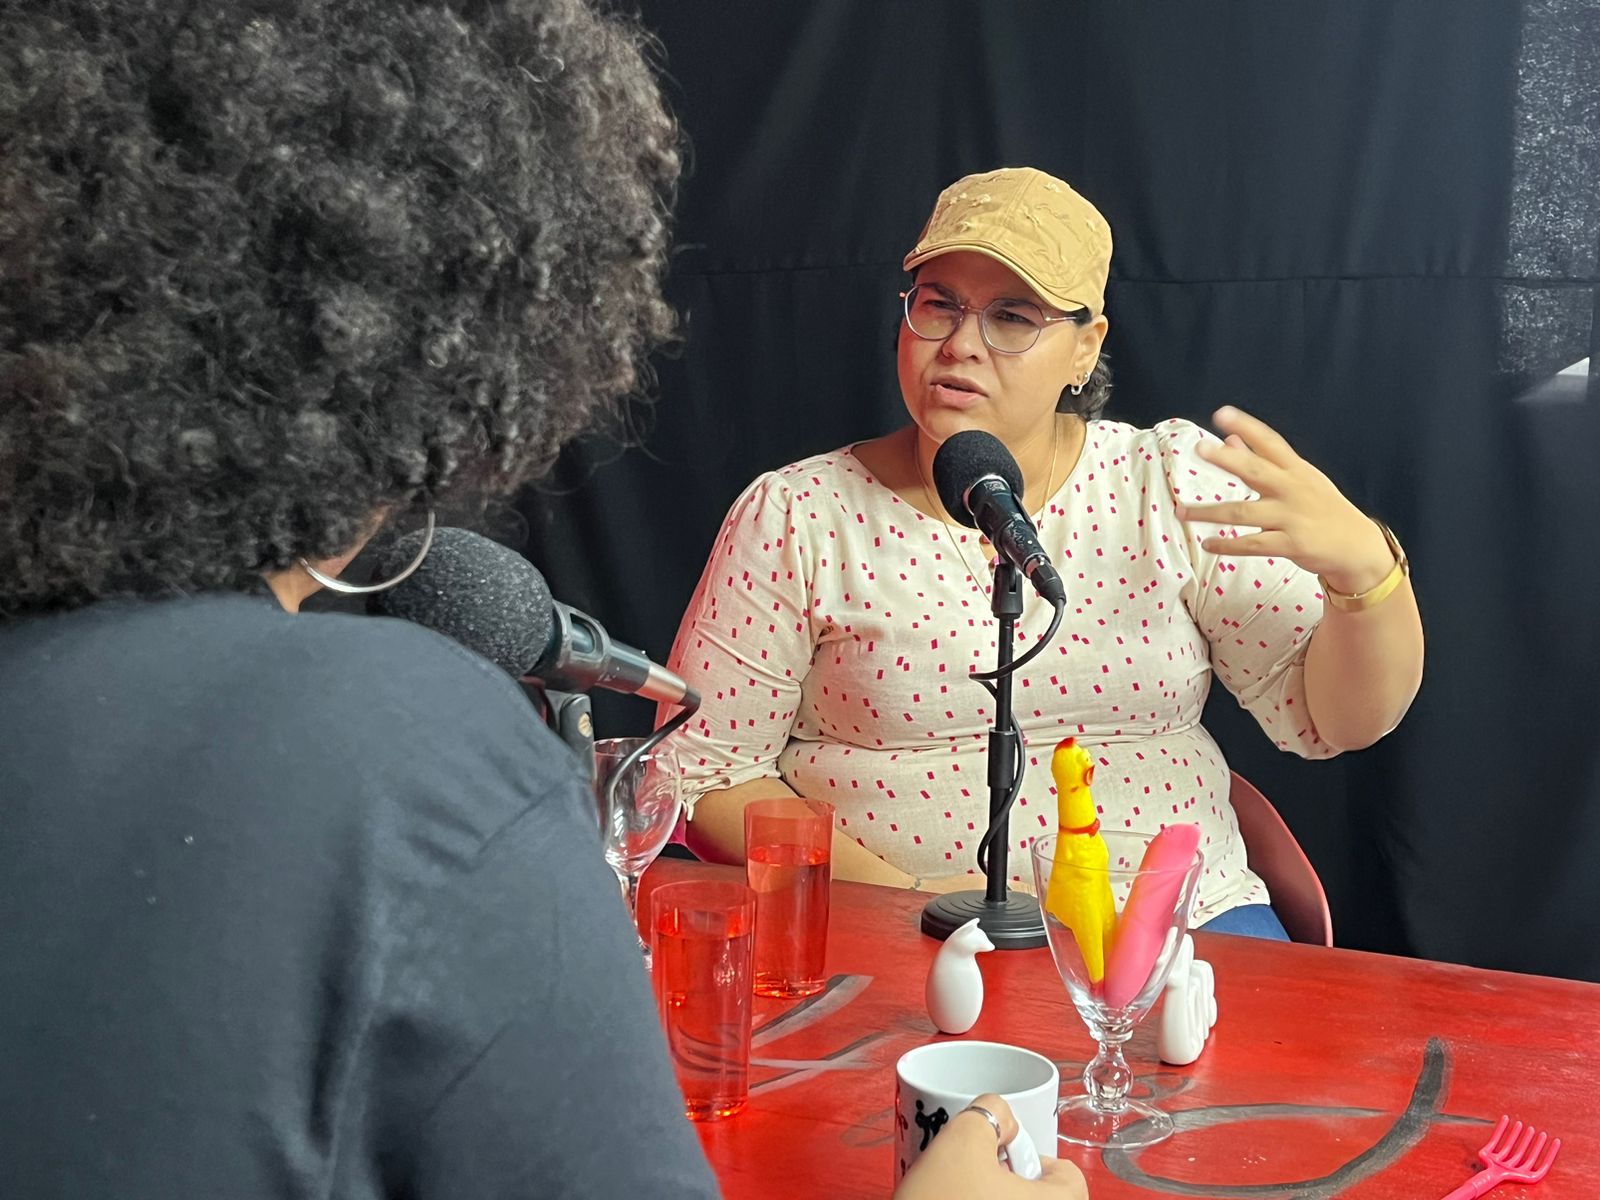 Podcast na TV FAROL fala sobre vivências lésbicas em Serra Talhada